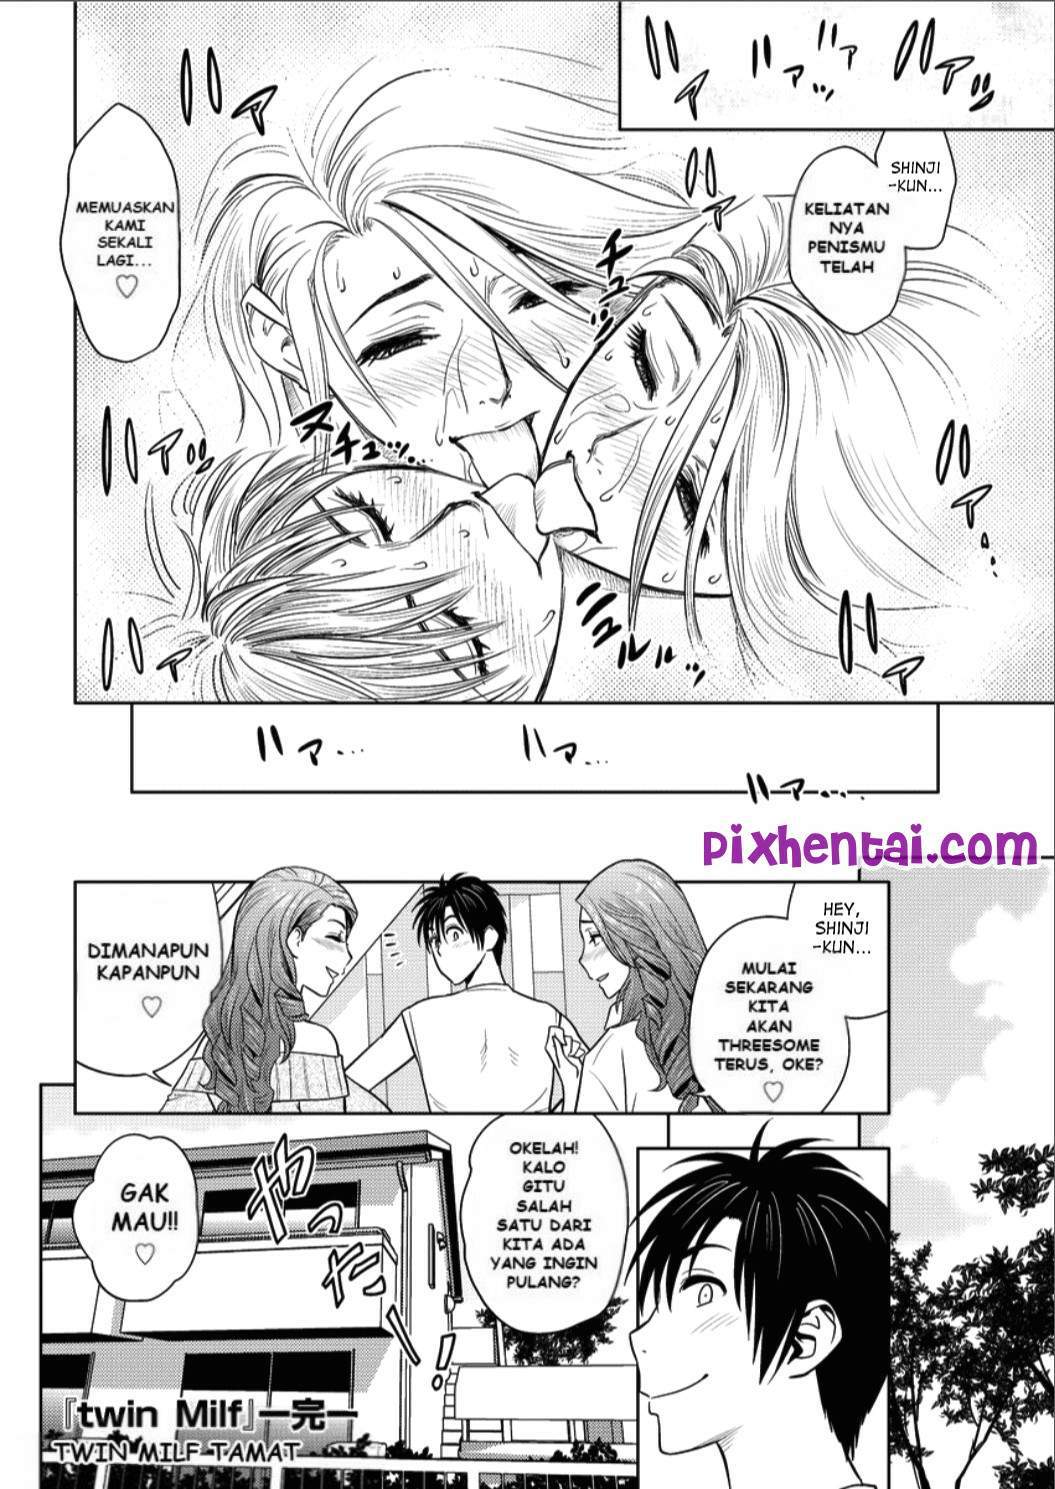 Komik hentai xxx manga sex bokep sesuatu yang dapat memuaskan tubuh dan pikiran 20